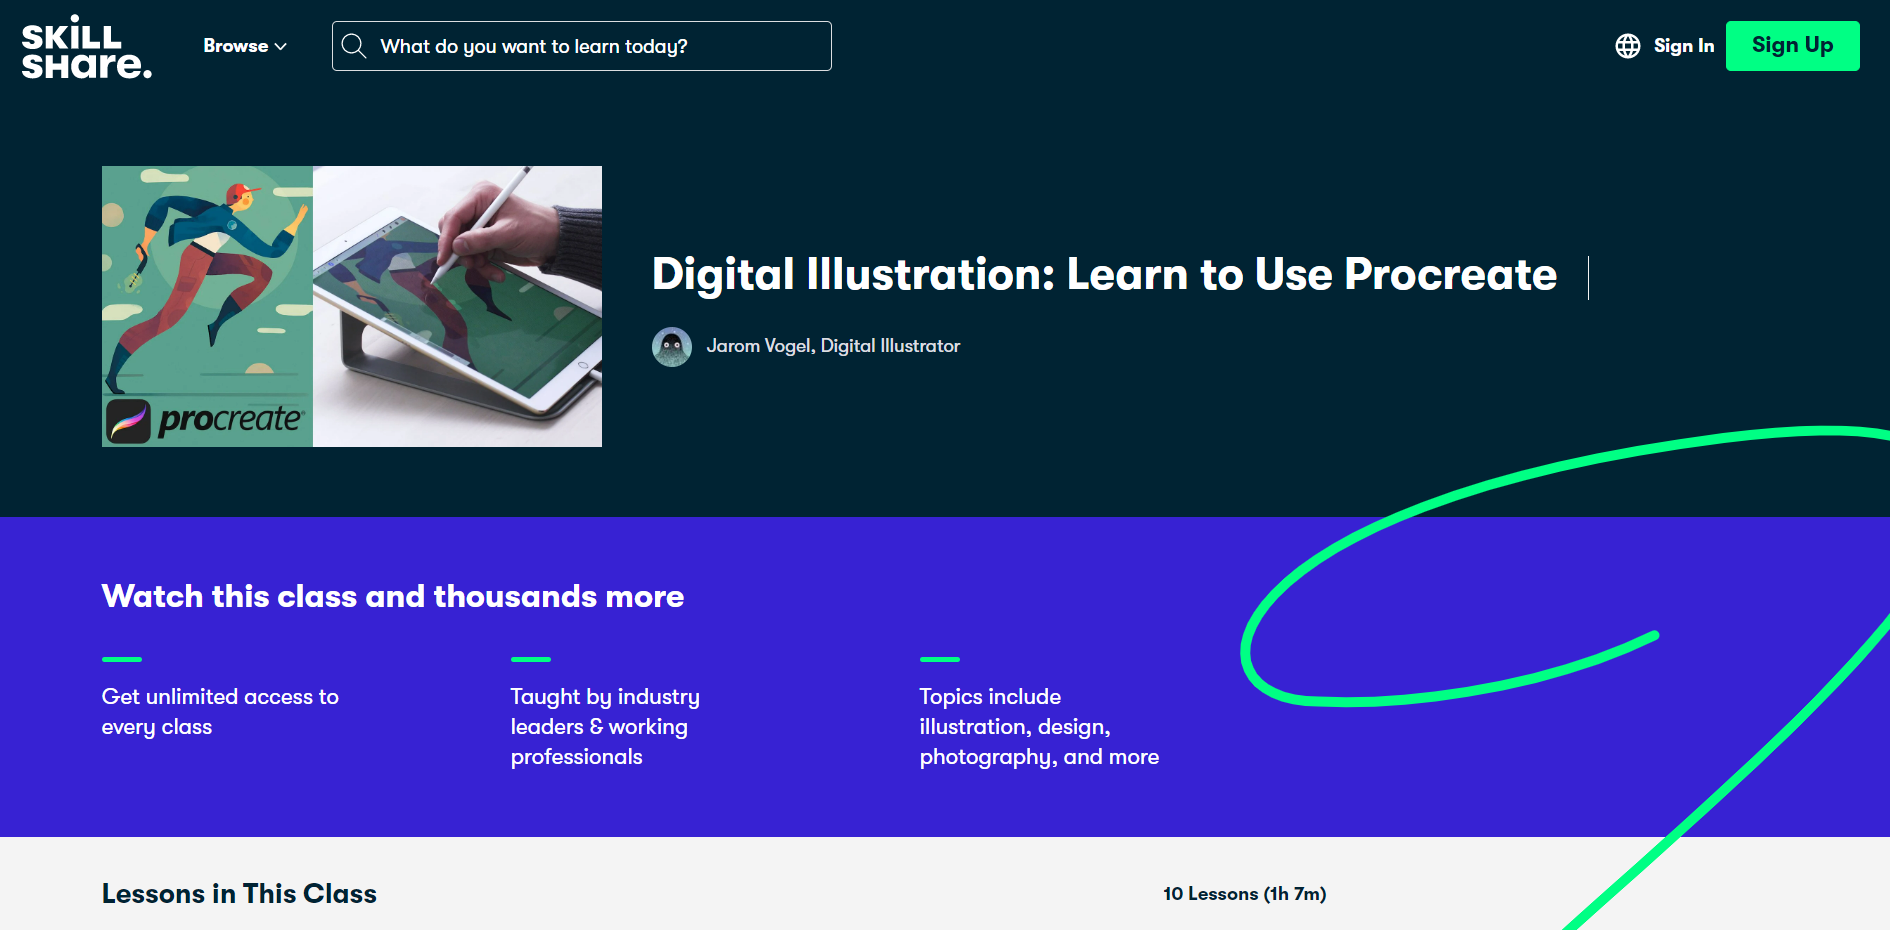 Digital Illustration- Learn to use Procreate